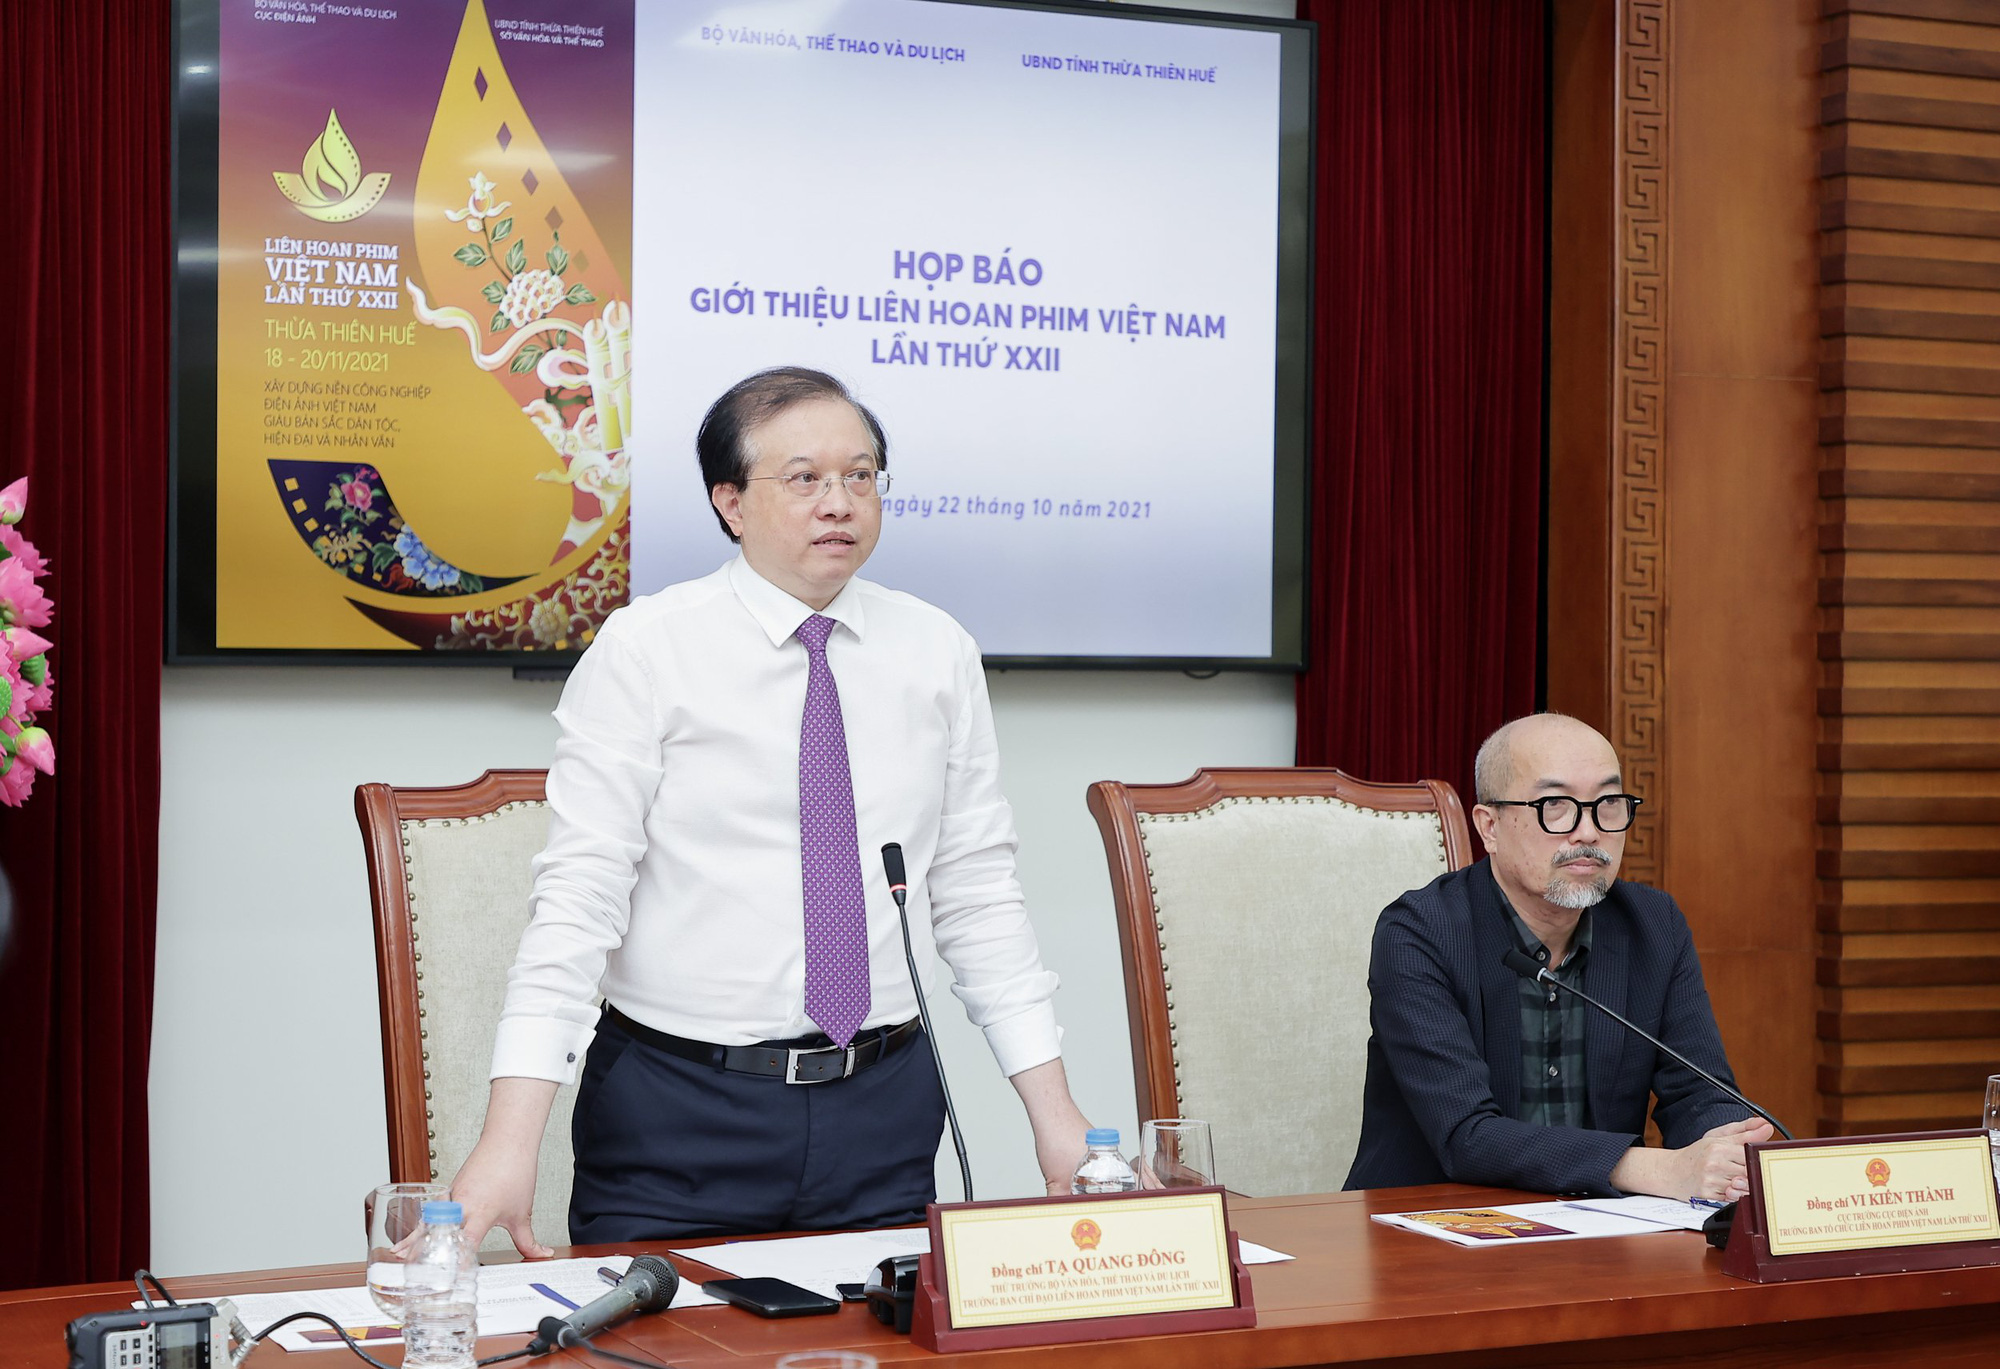 5 điểm mới nổi bật của Liên hoan phim Việt Nam lần thứ 22 - Ảnh 1.